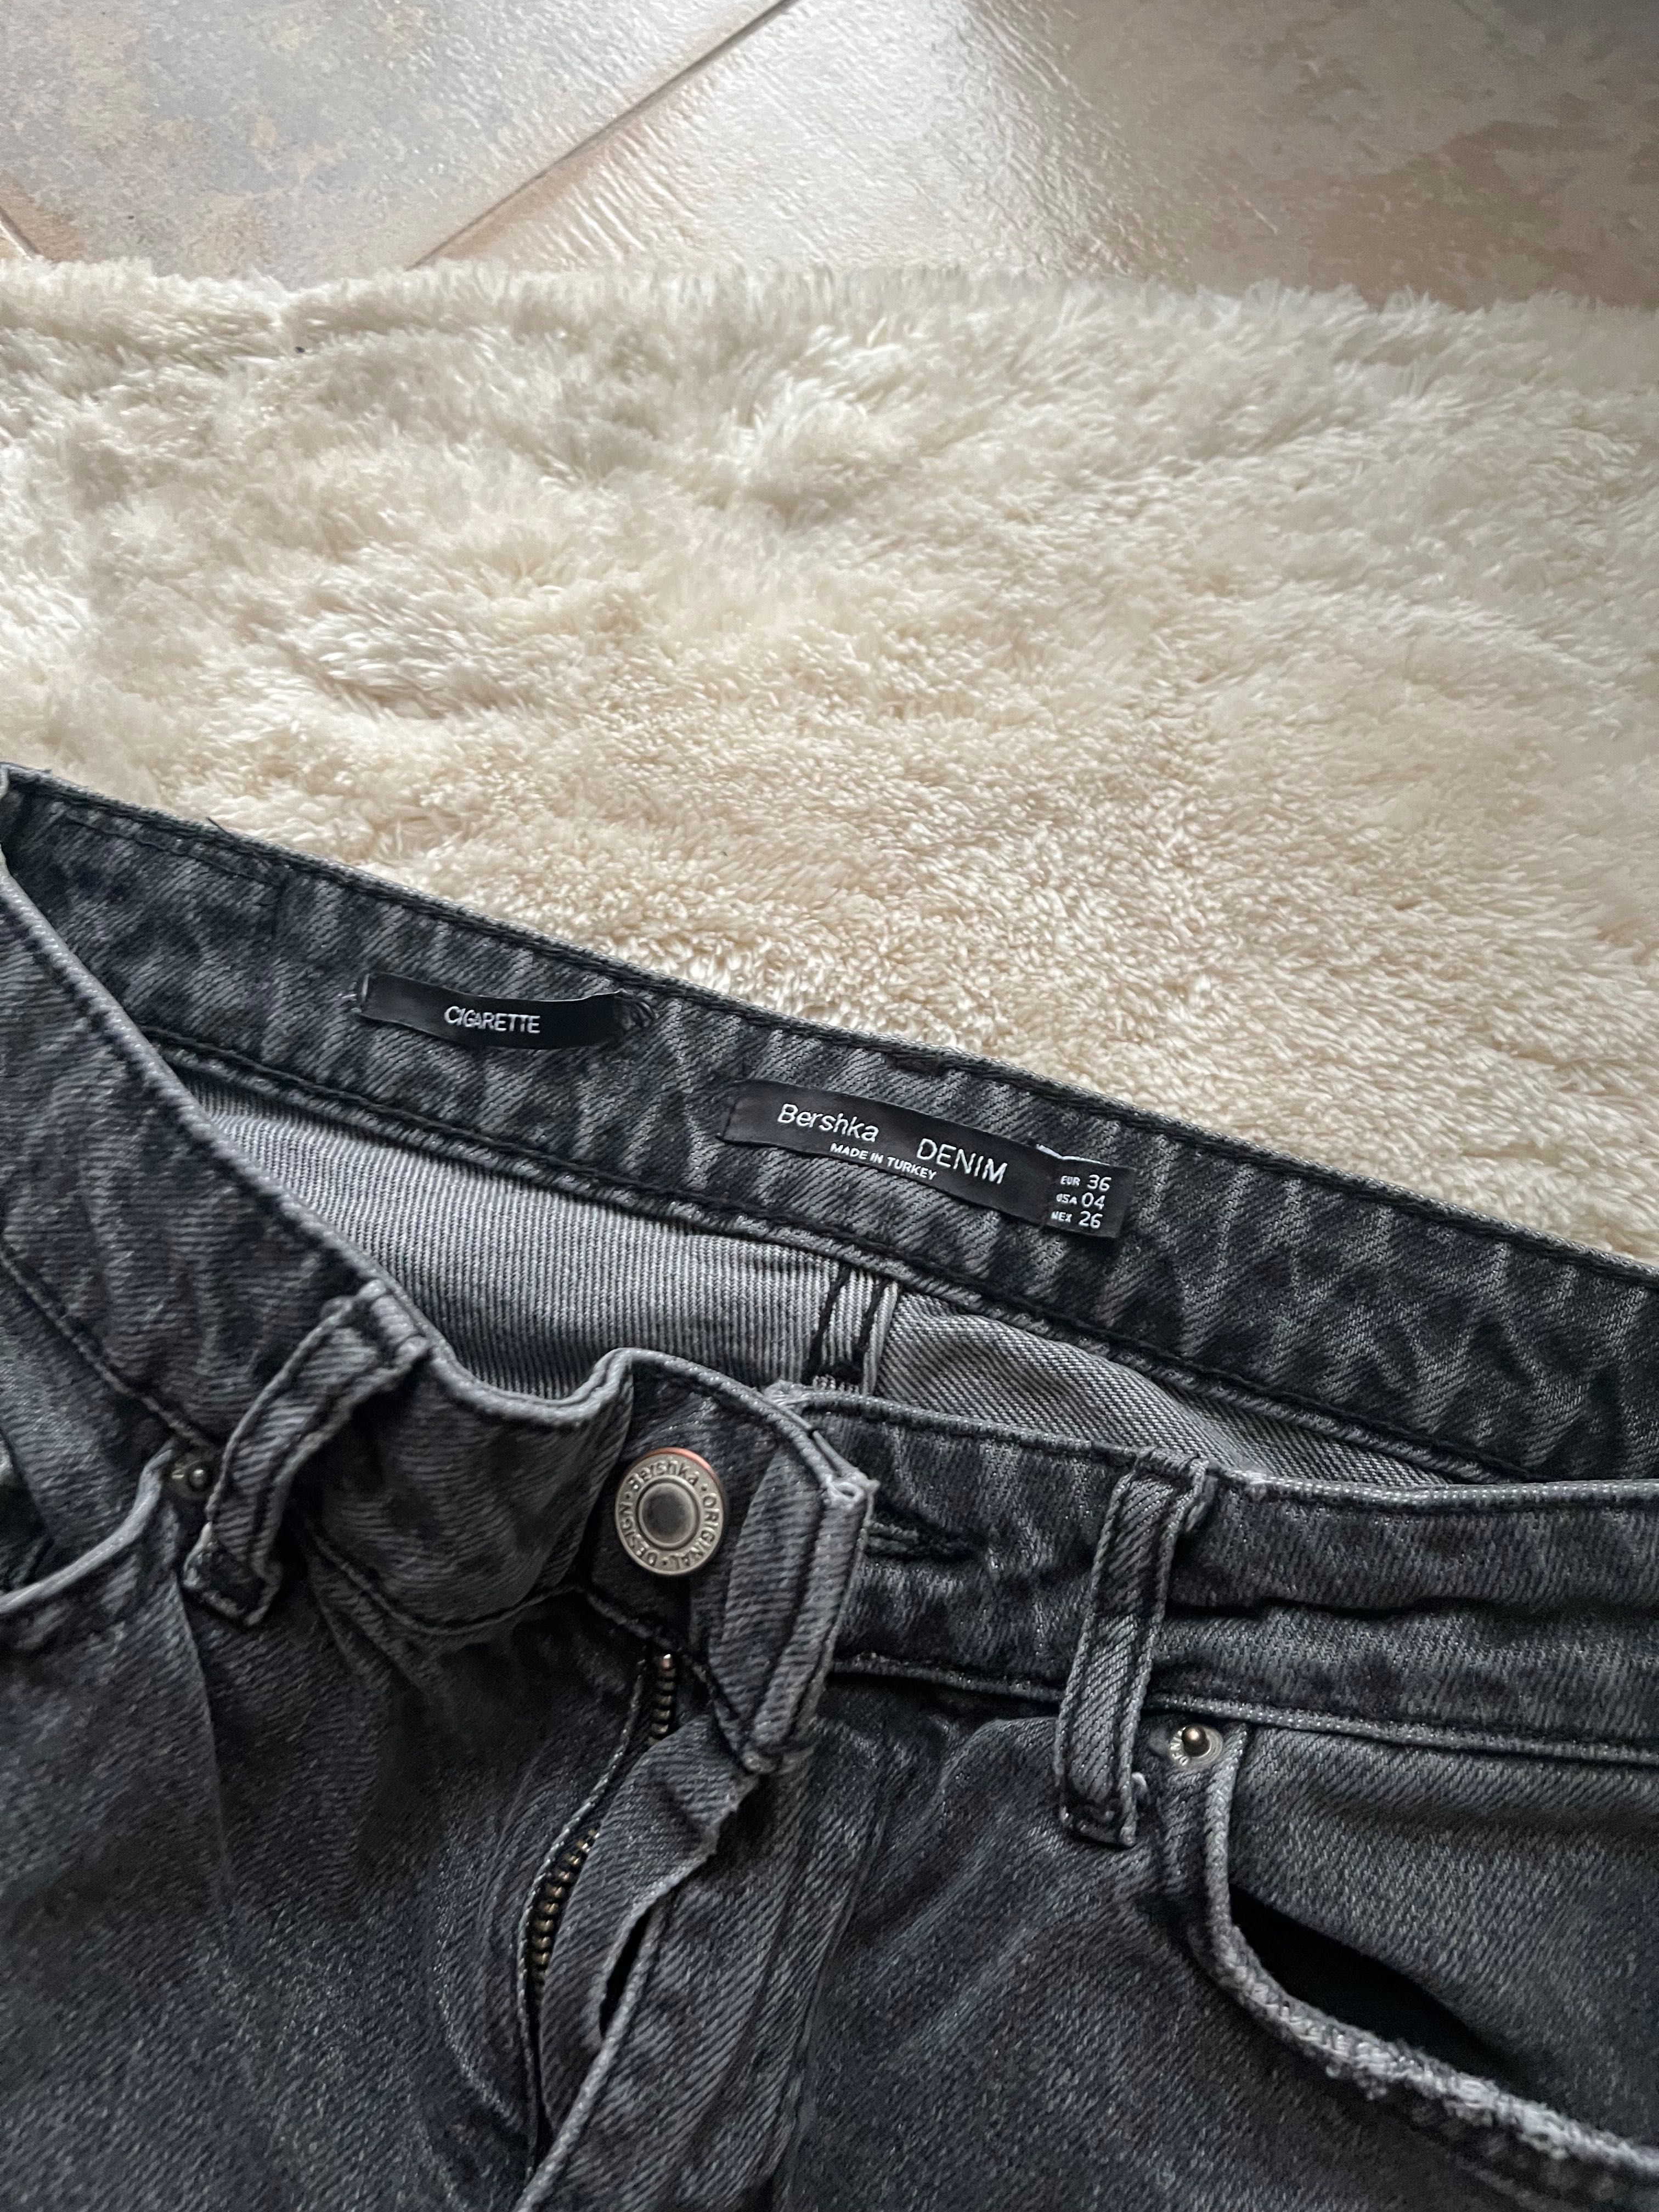 Jeansy szare haftowane Bershka rozmiar XS/S